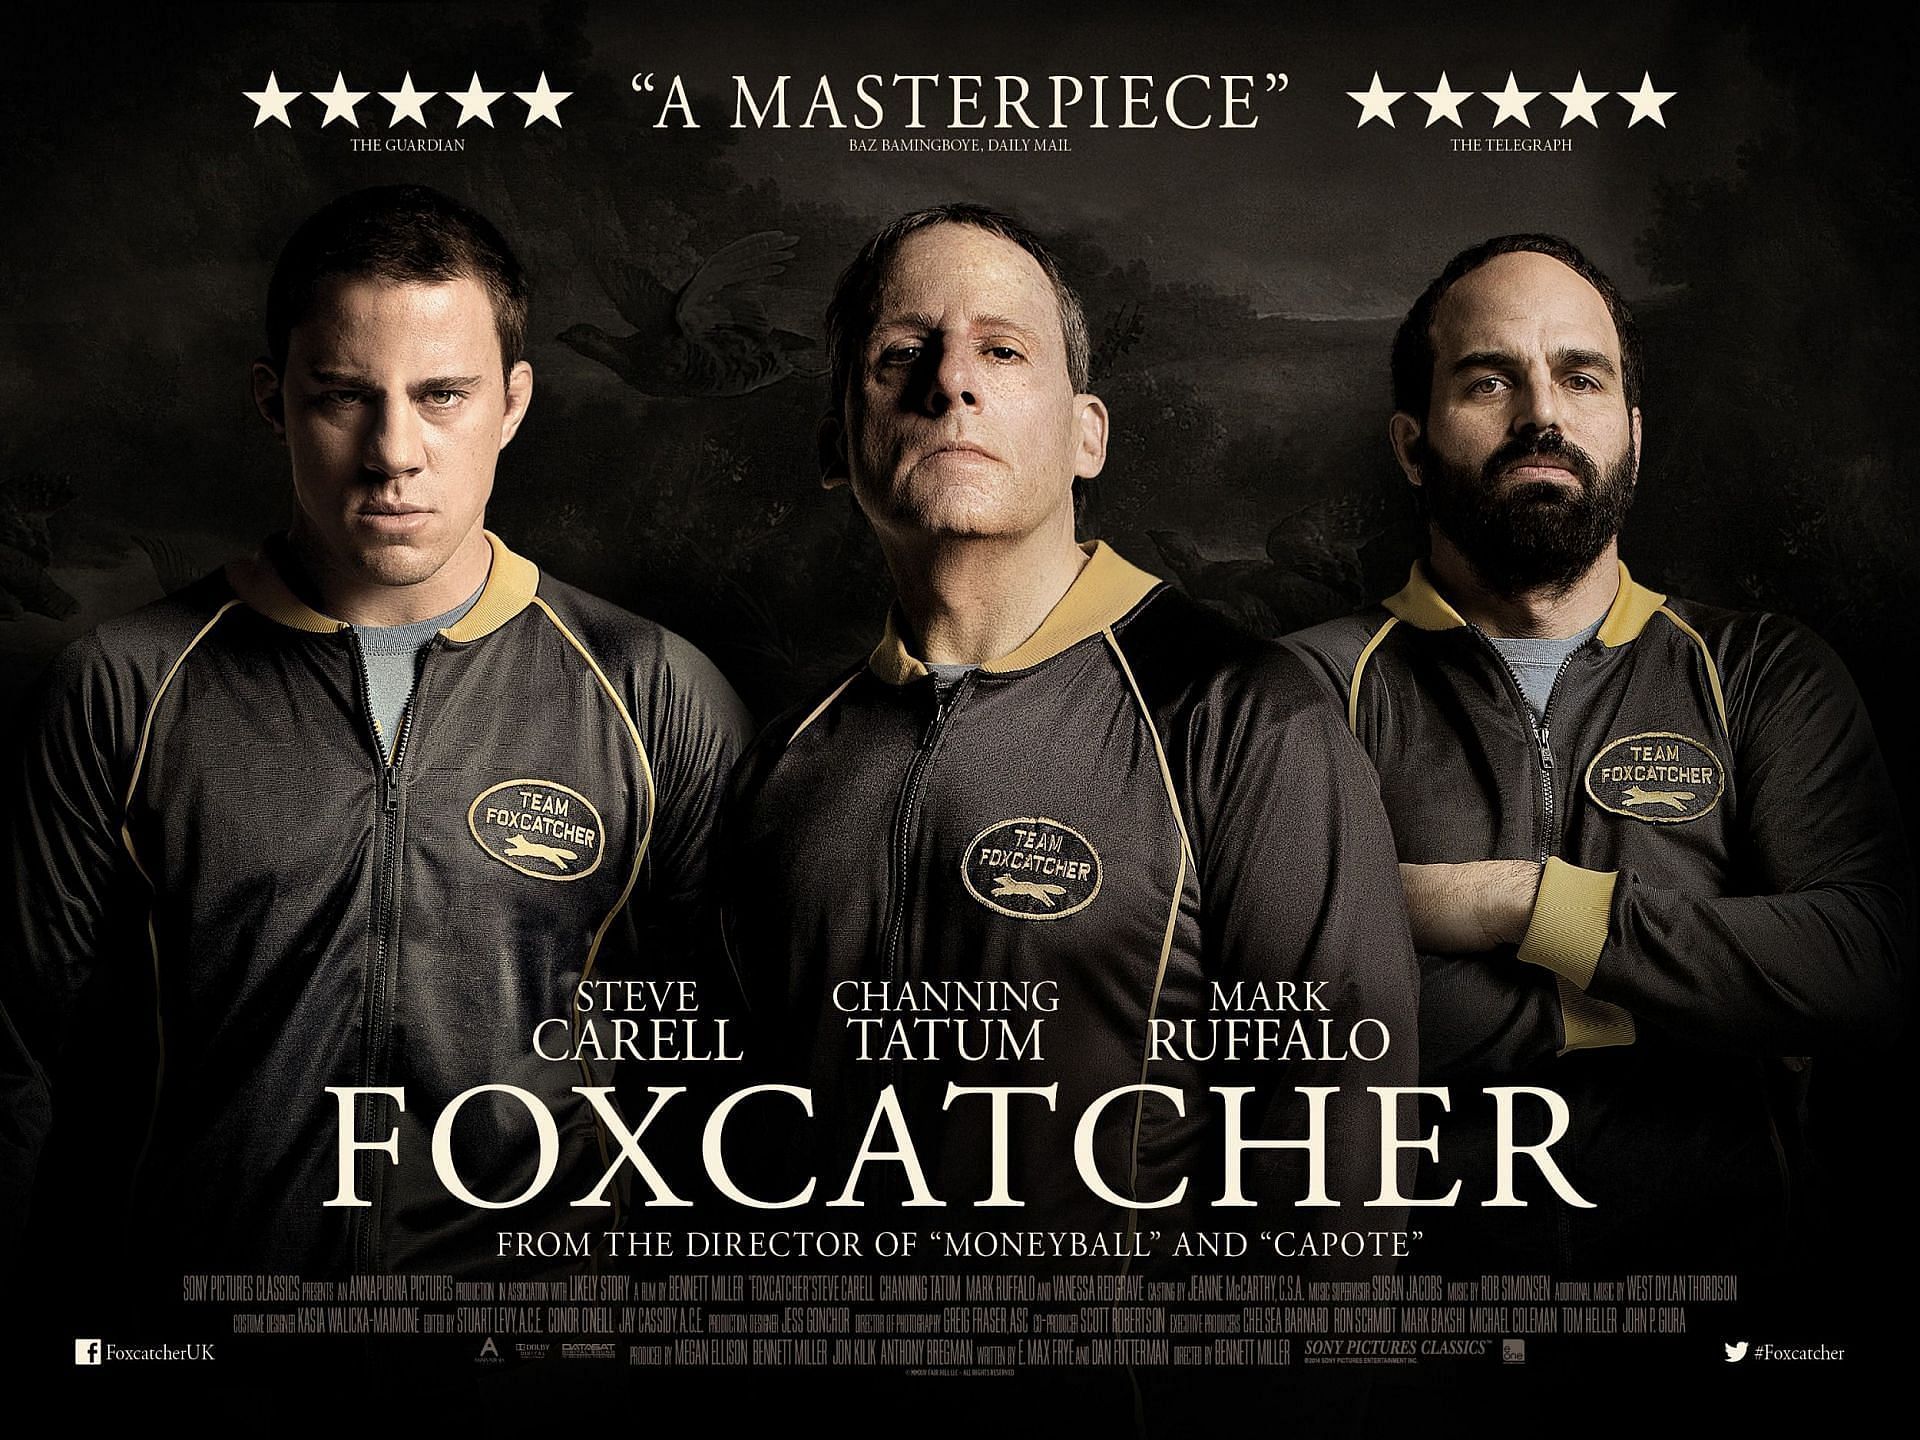 Foxcatcher (Image via Sony Pictures)